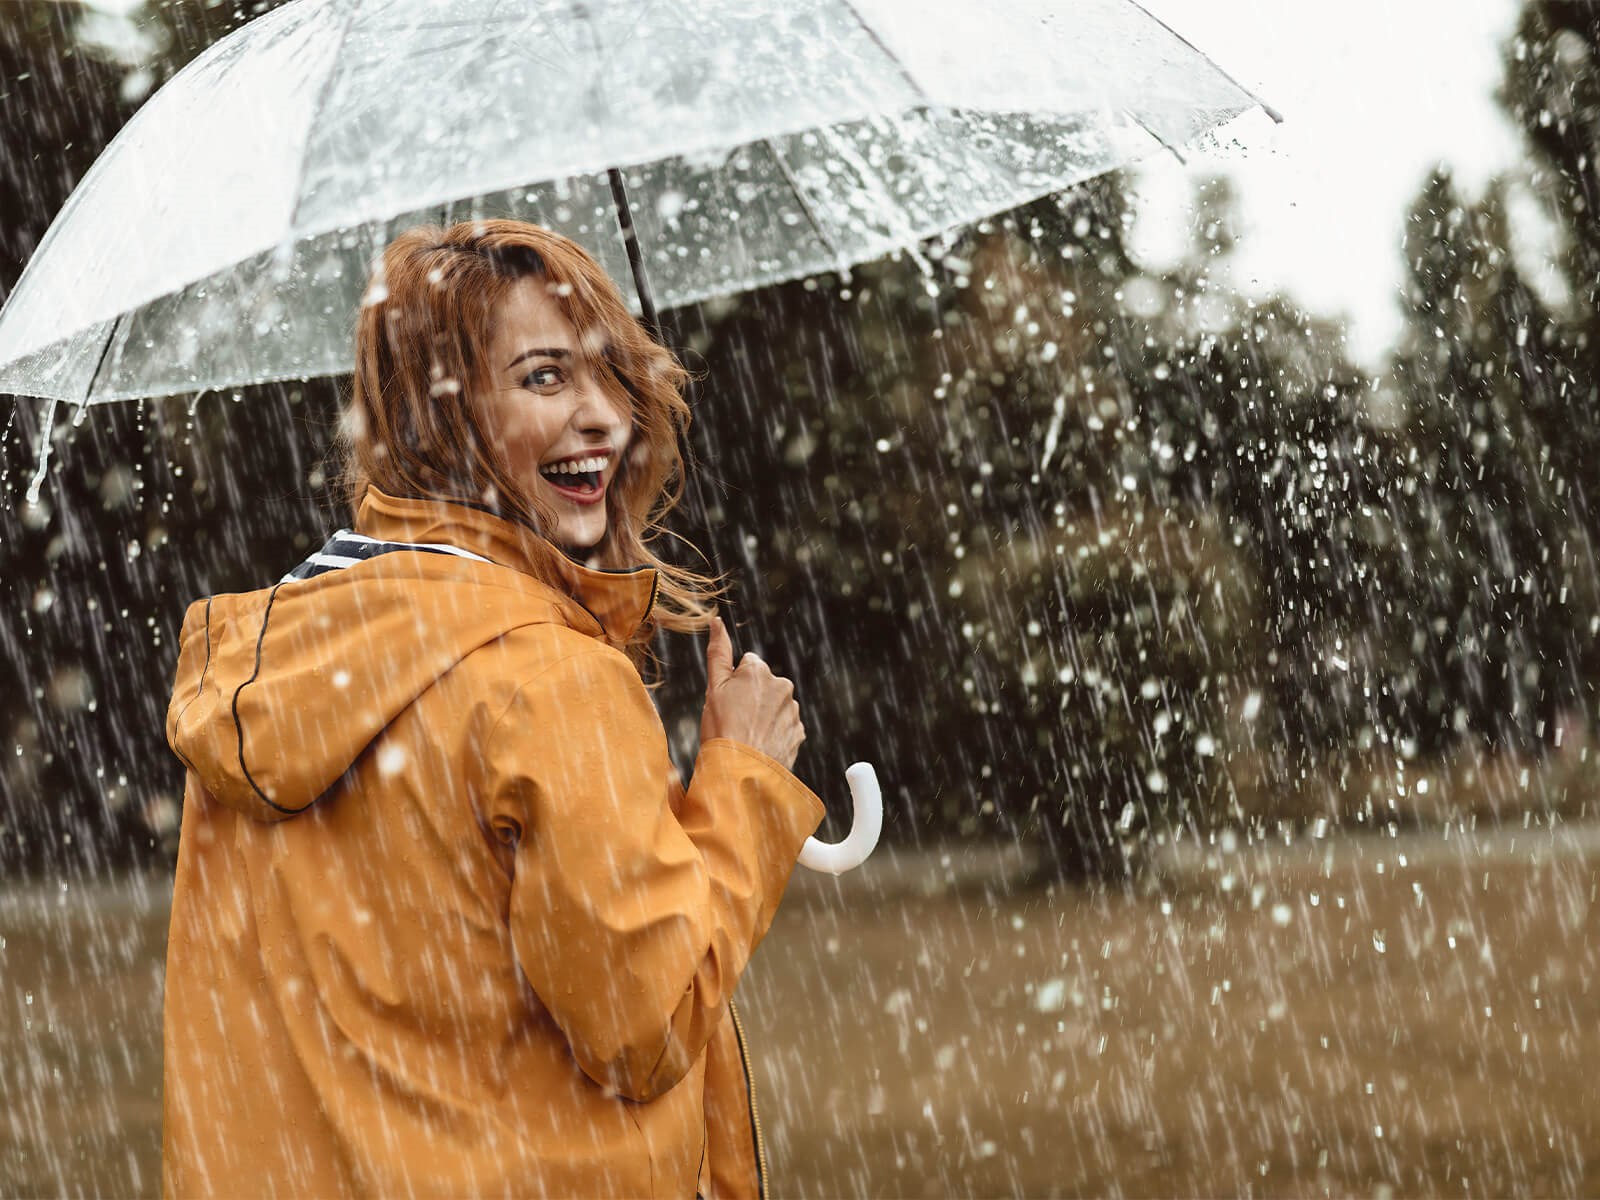 Kvinde med paraply i regnvejr Ansvar for miljøet skal tages alvorligt.